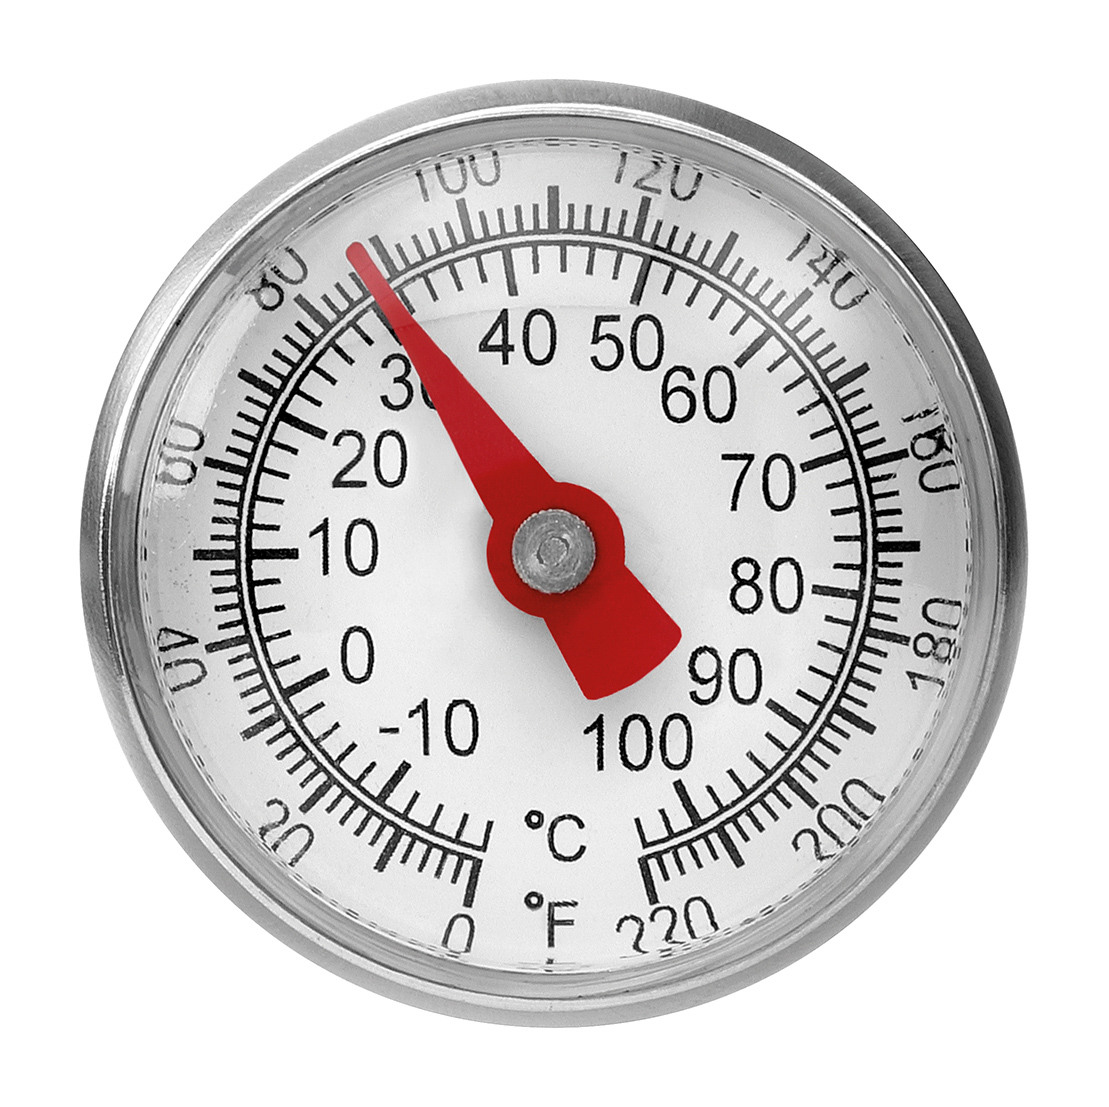 Bartscher Thermometer A1020 KTP | Durchmesser Temperaturfühler: 3,8 mm | Maße: 2,7 x 2,7 x 140 cm. Gewicht: 0,015 kg